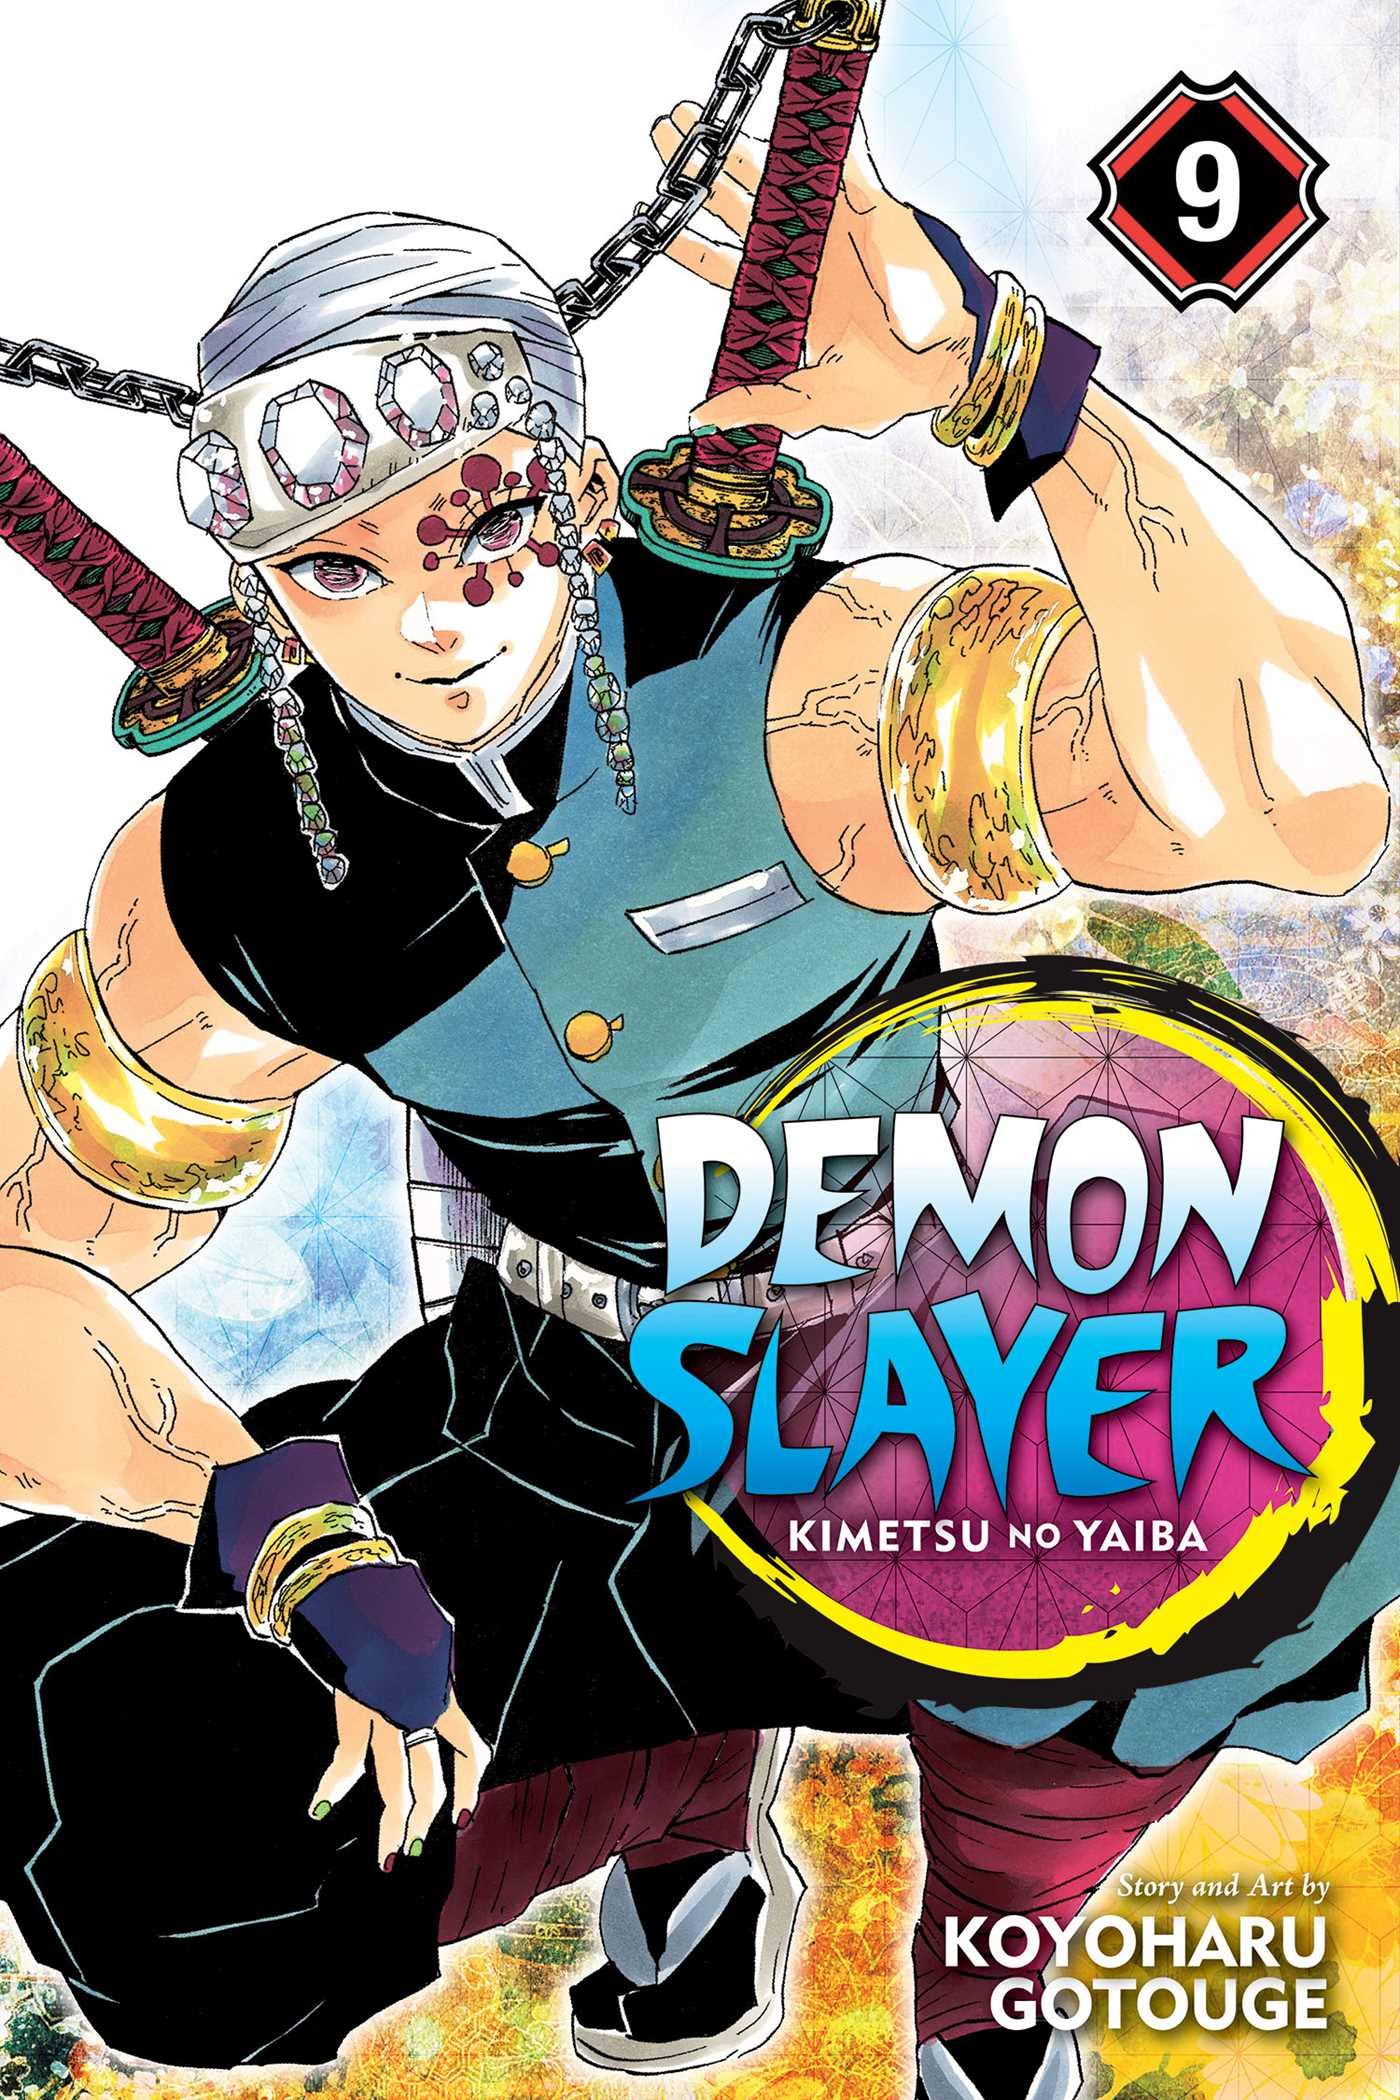 Demon Slayer: Kimetsu no Yaiba, Vol. 9 | Koyoharu Gotouge